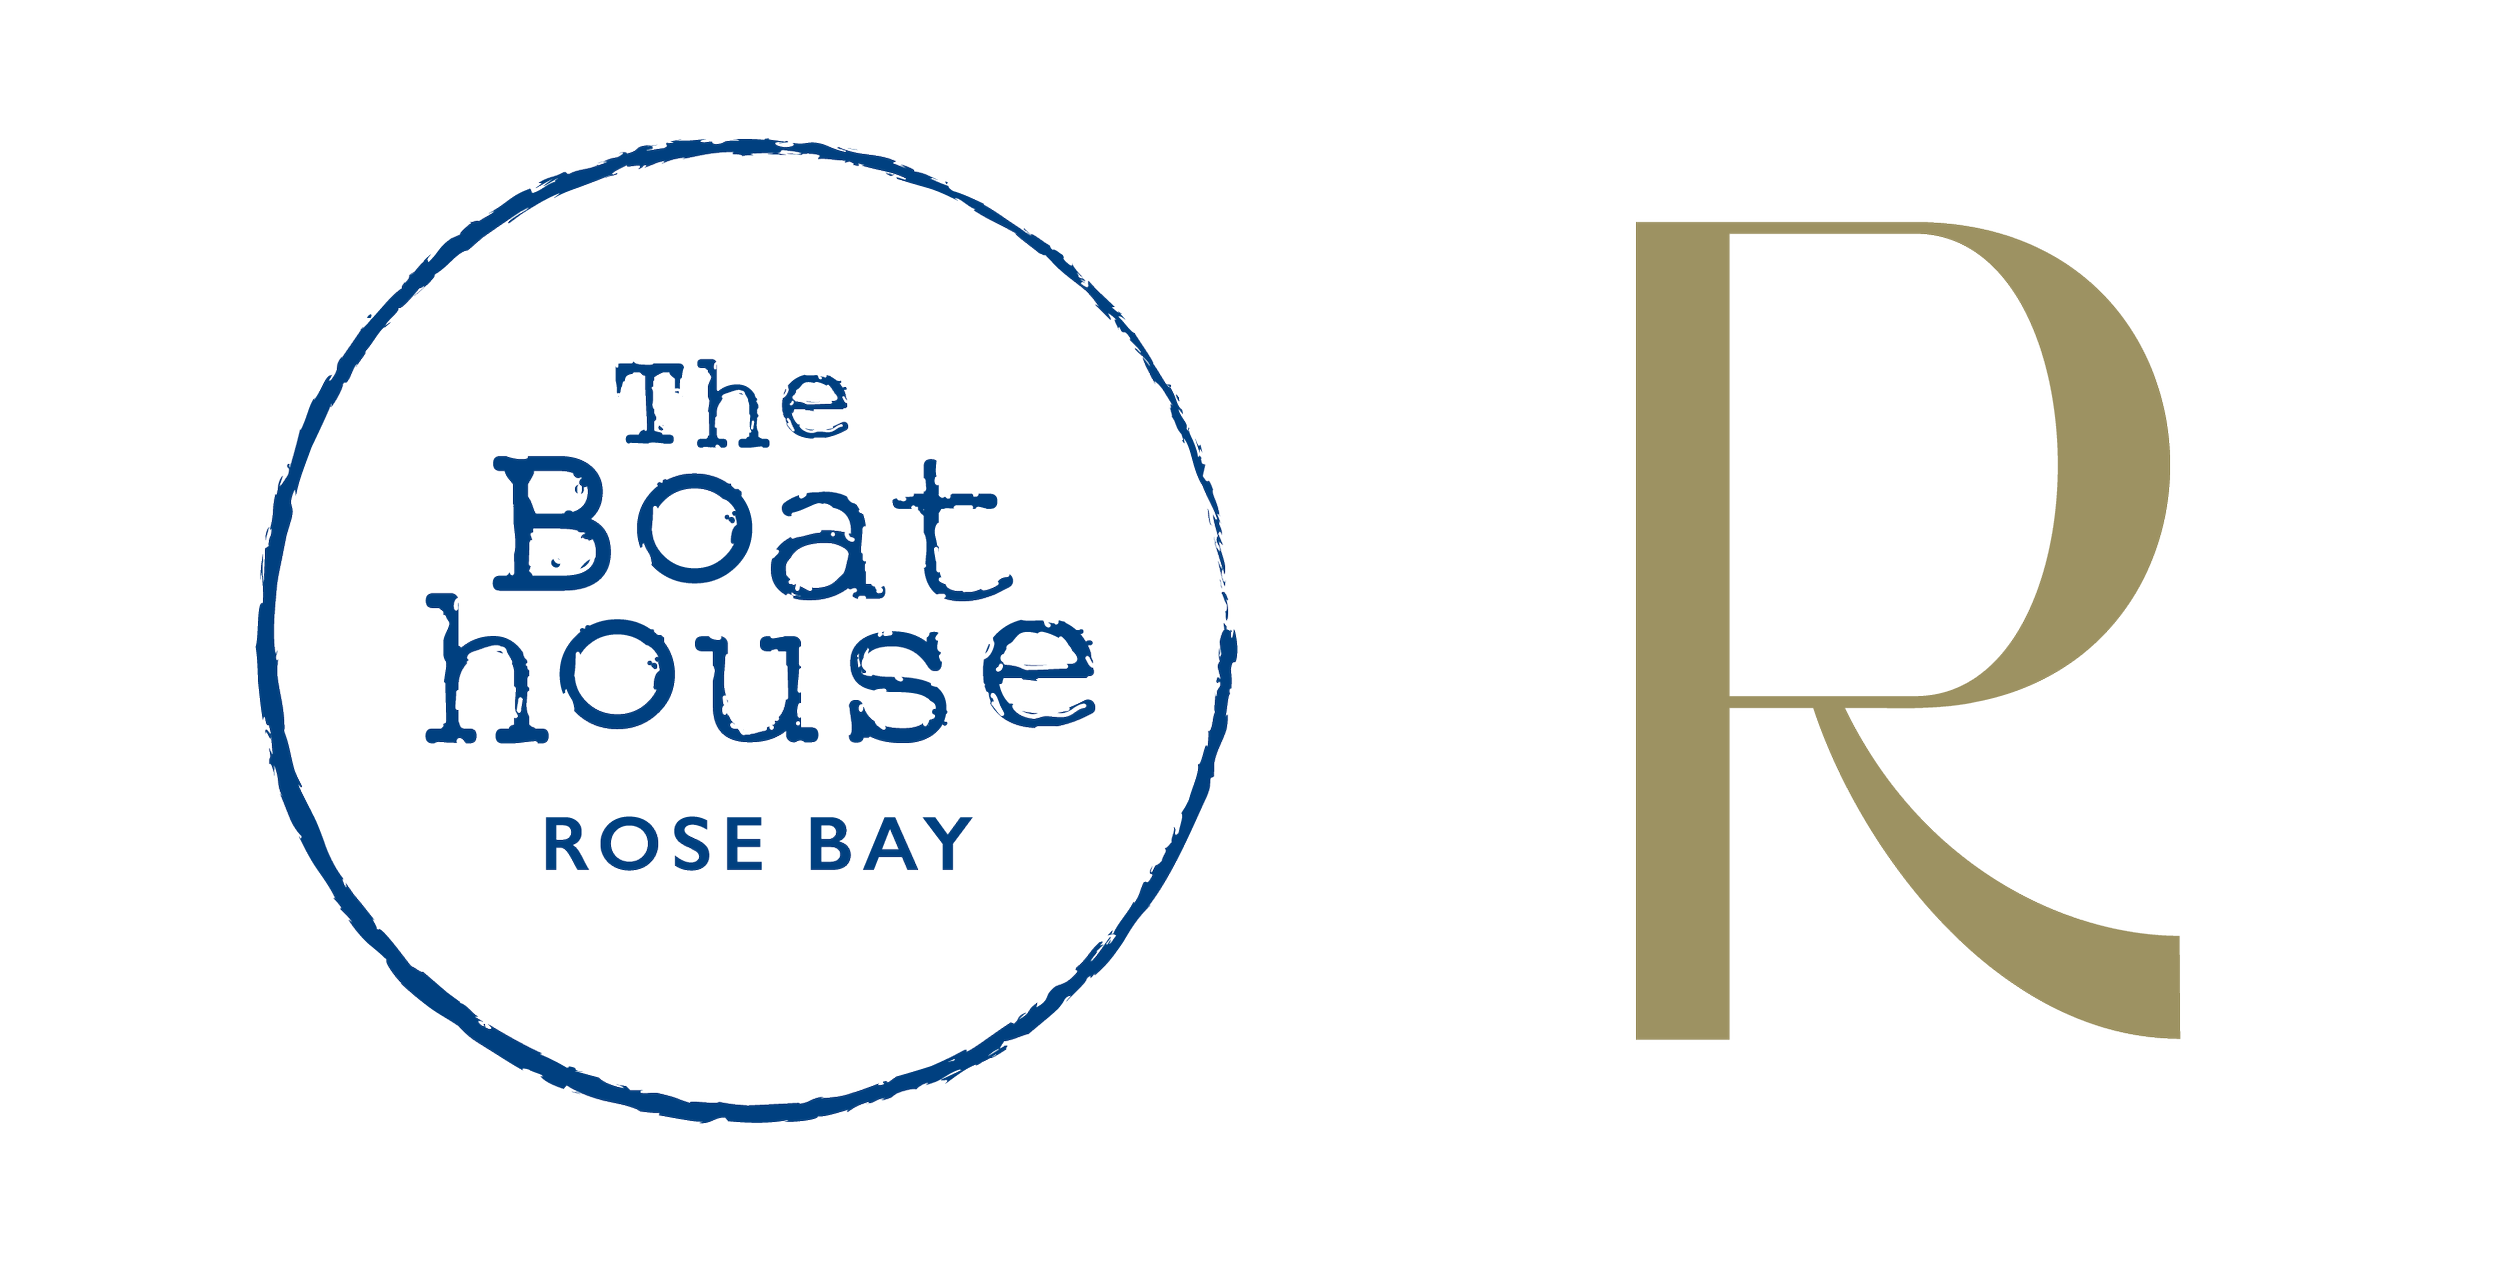 The Boathouse Rose Bay